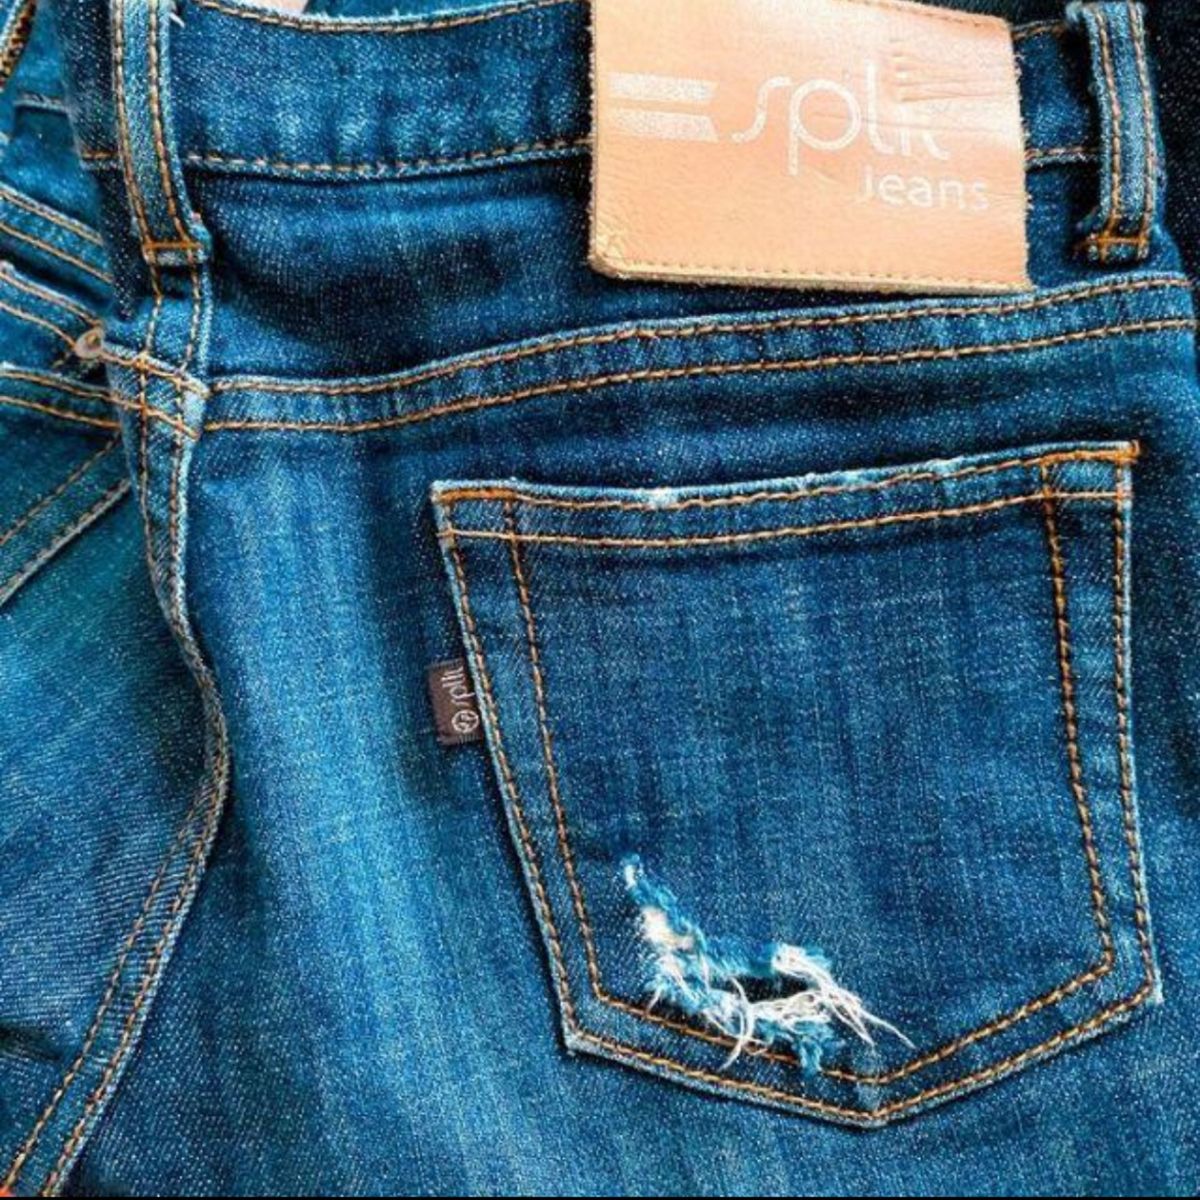 split jeans デニム ジーンズ ロールアップ チェック柄 ダメージ加工  インディゴ ブルー アメリカ 24インチ 